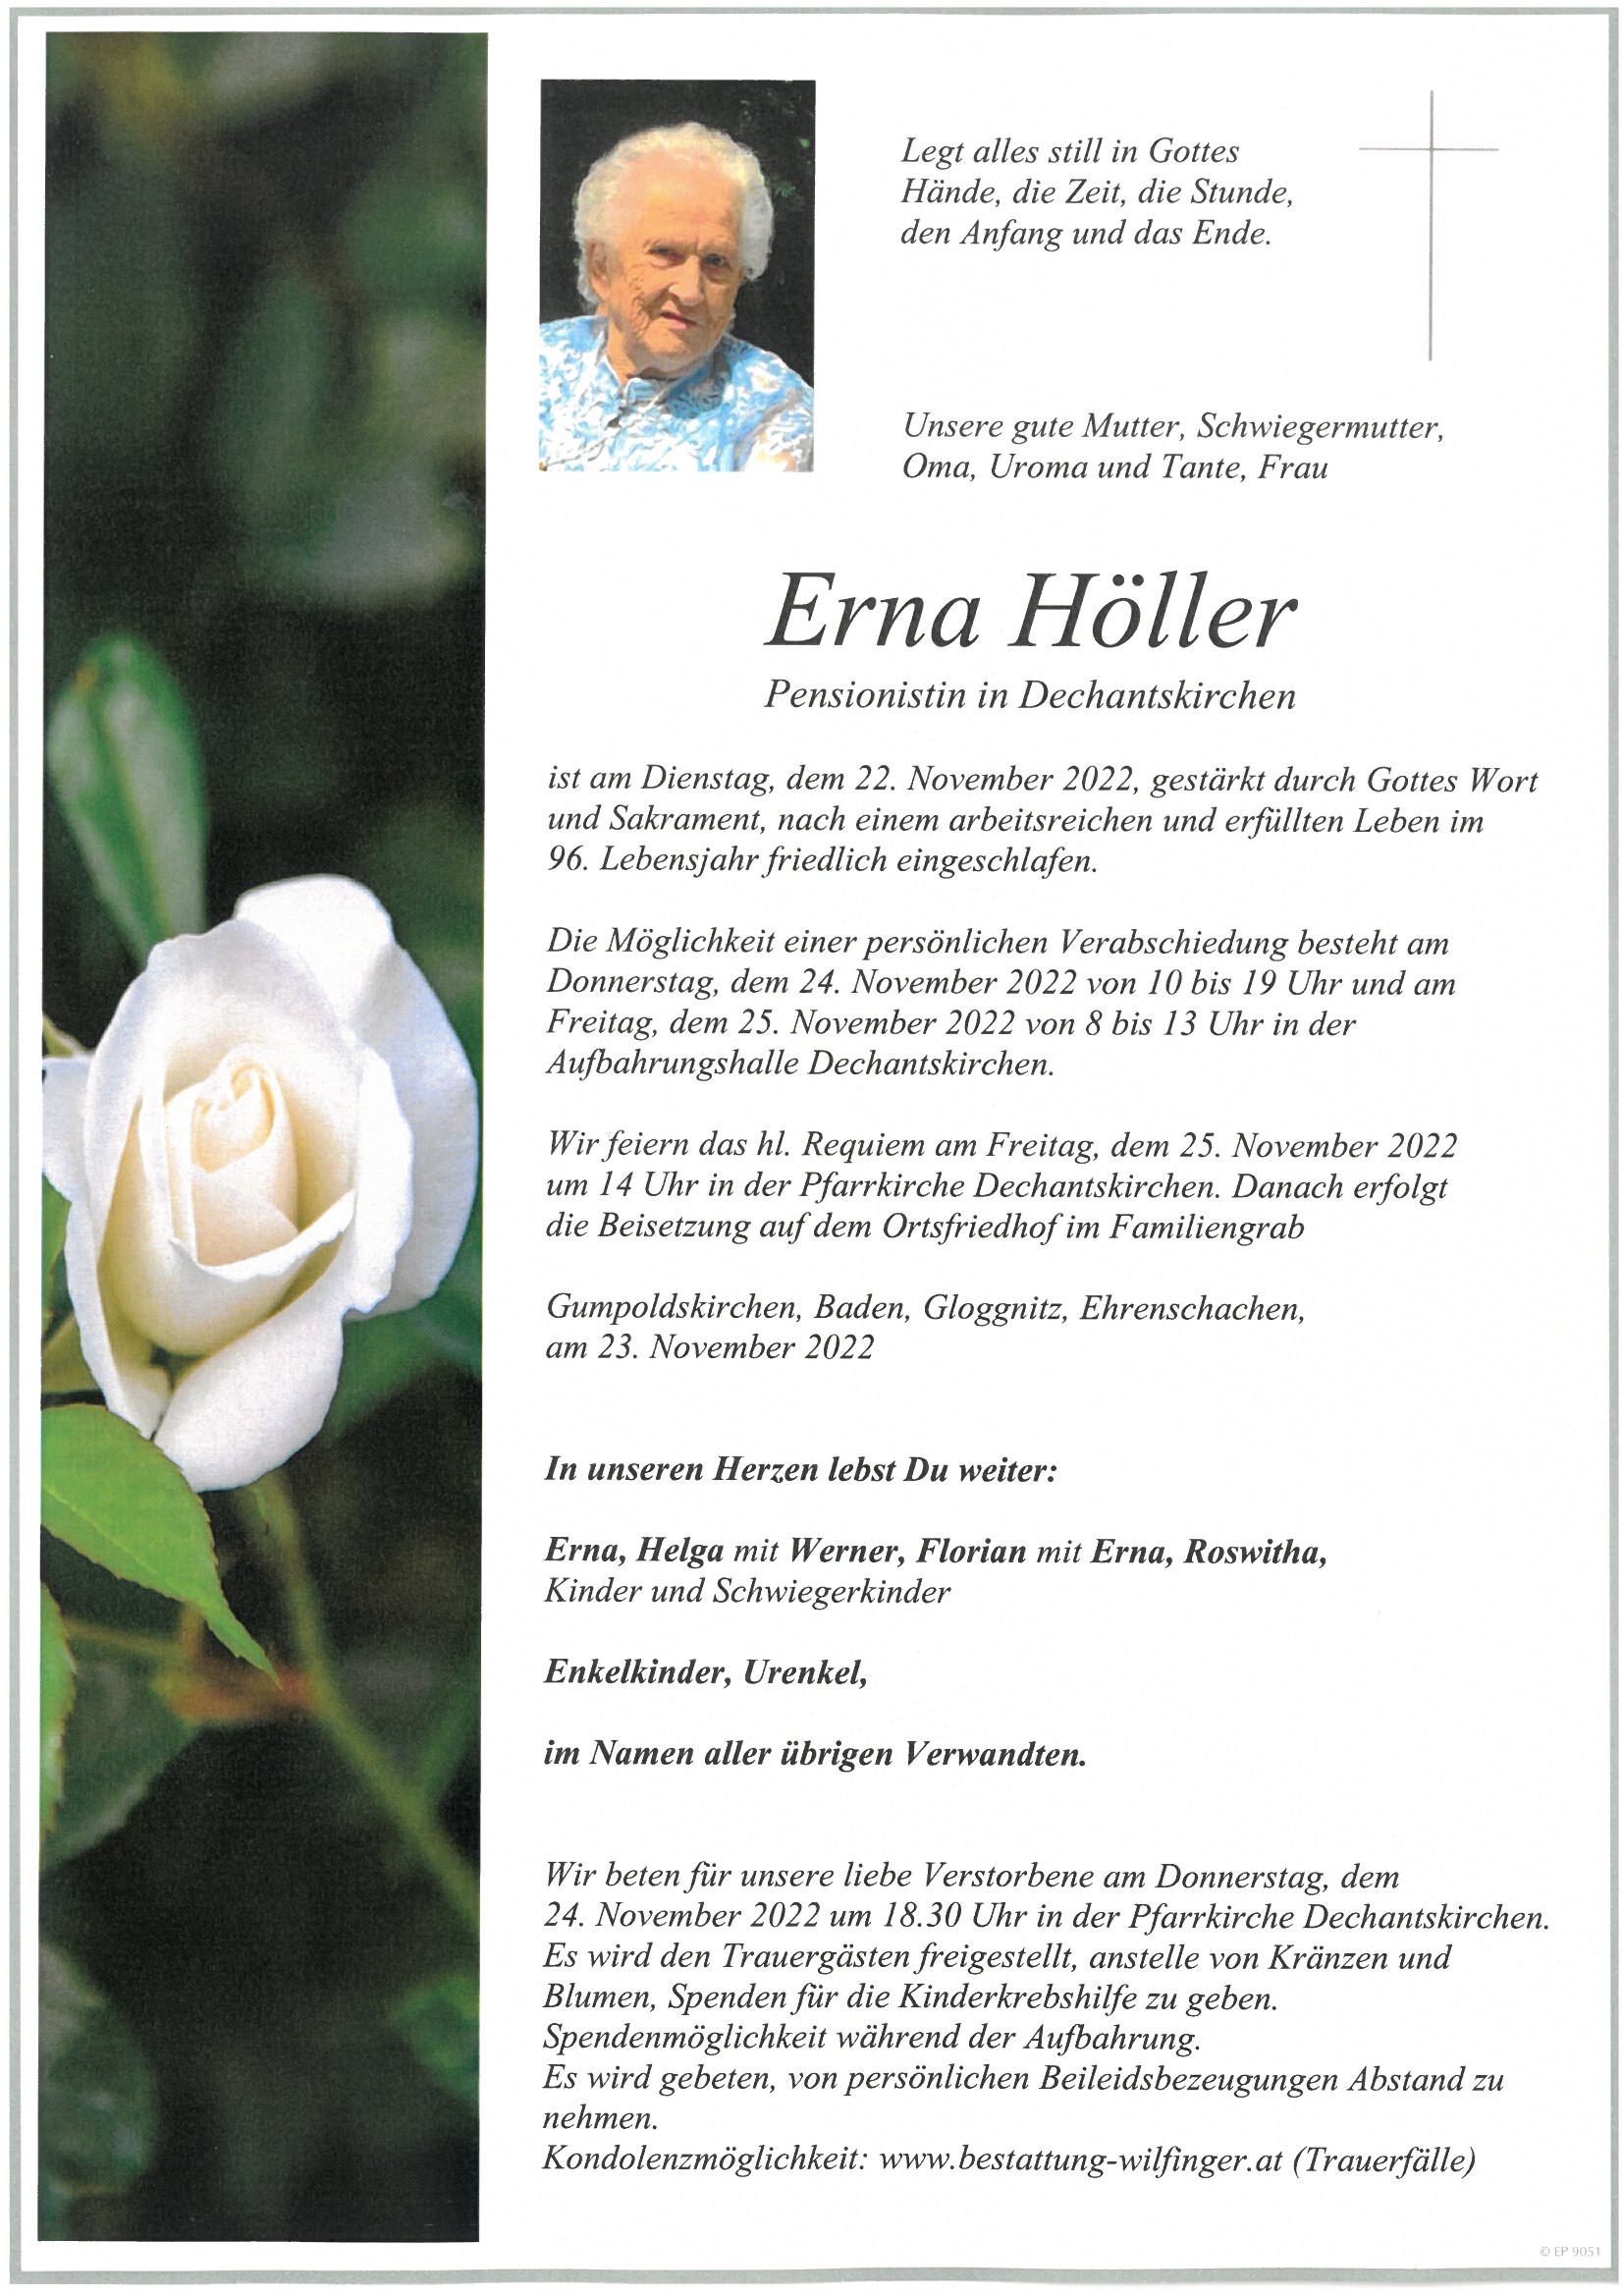 Erna Höller, Dechantskirchen